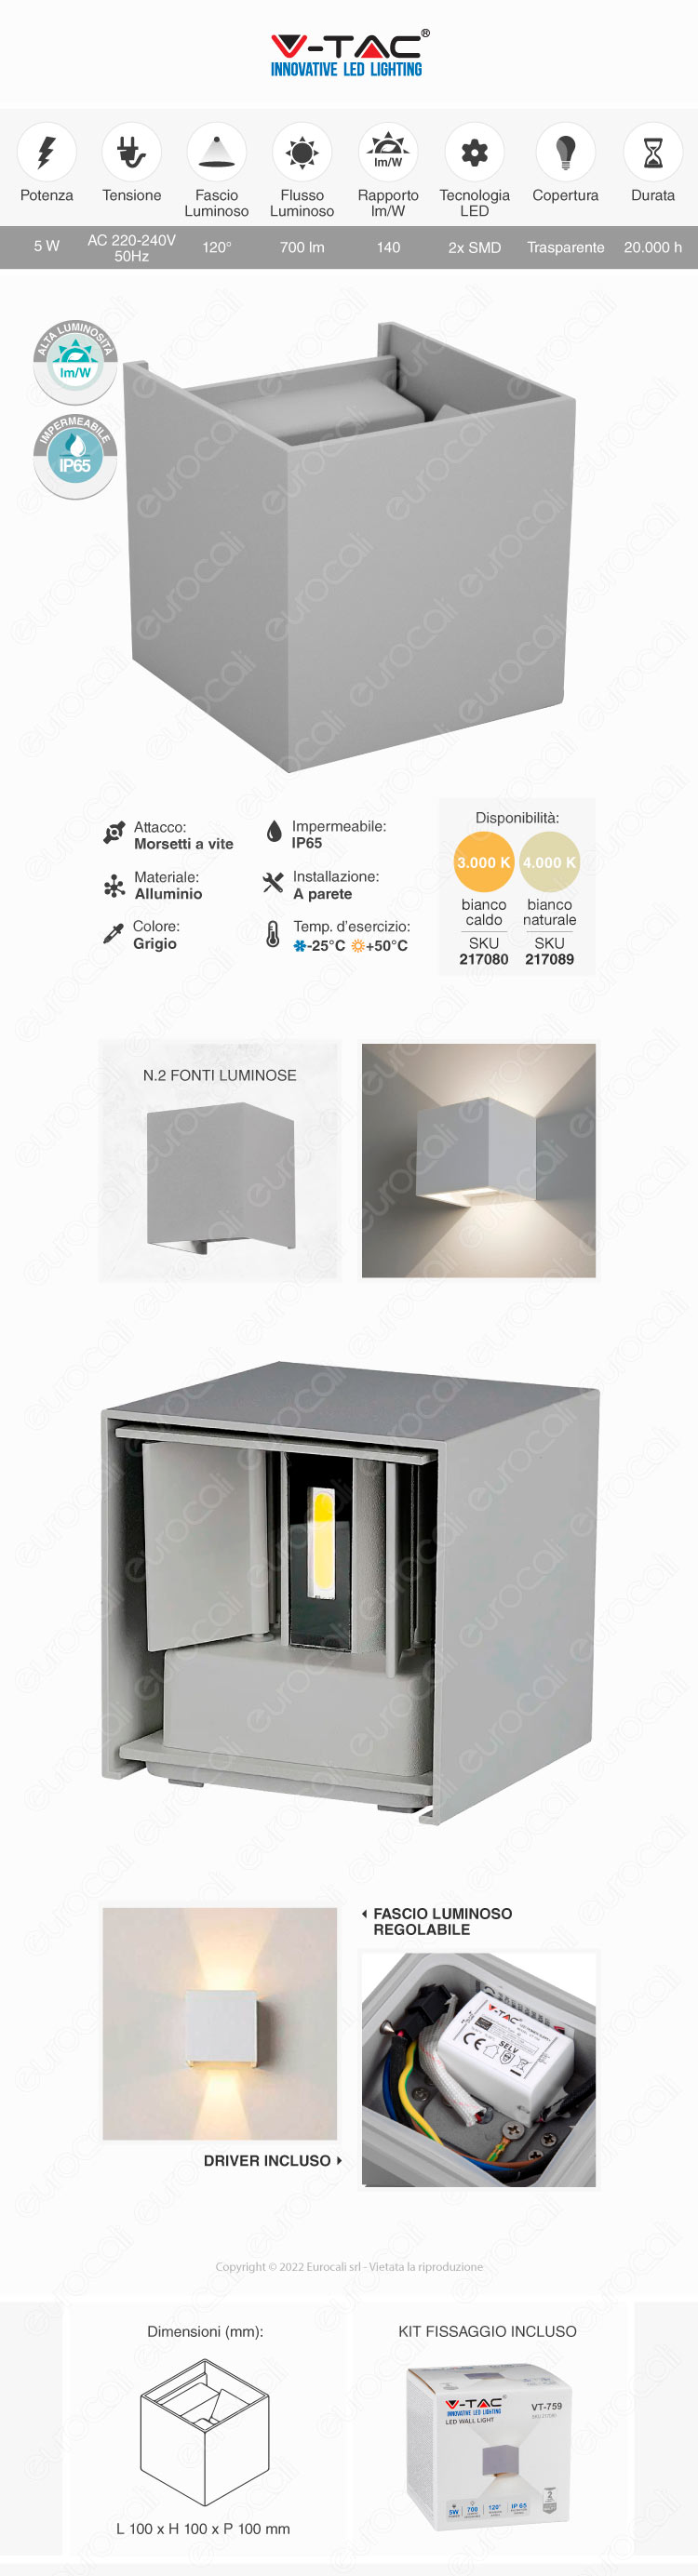 v-tac vt-759 applique led 5w wall light cob ip65 gray